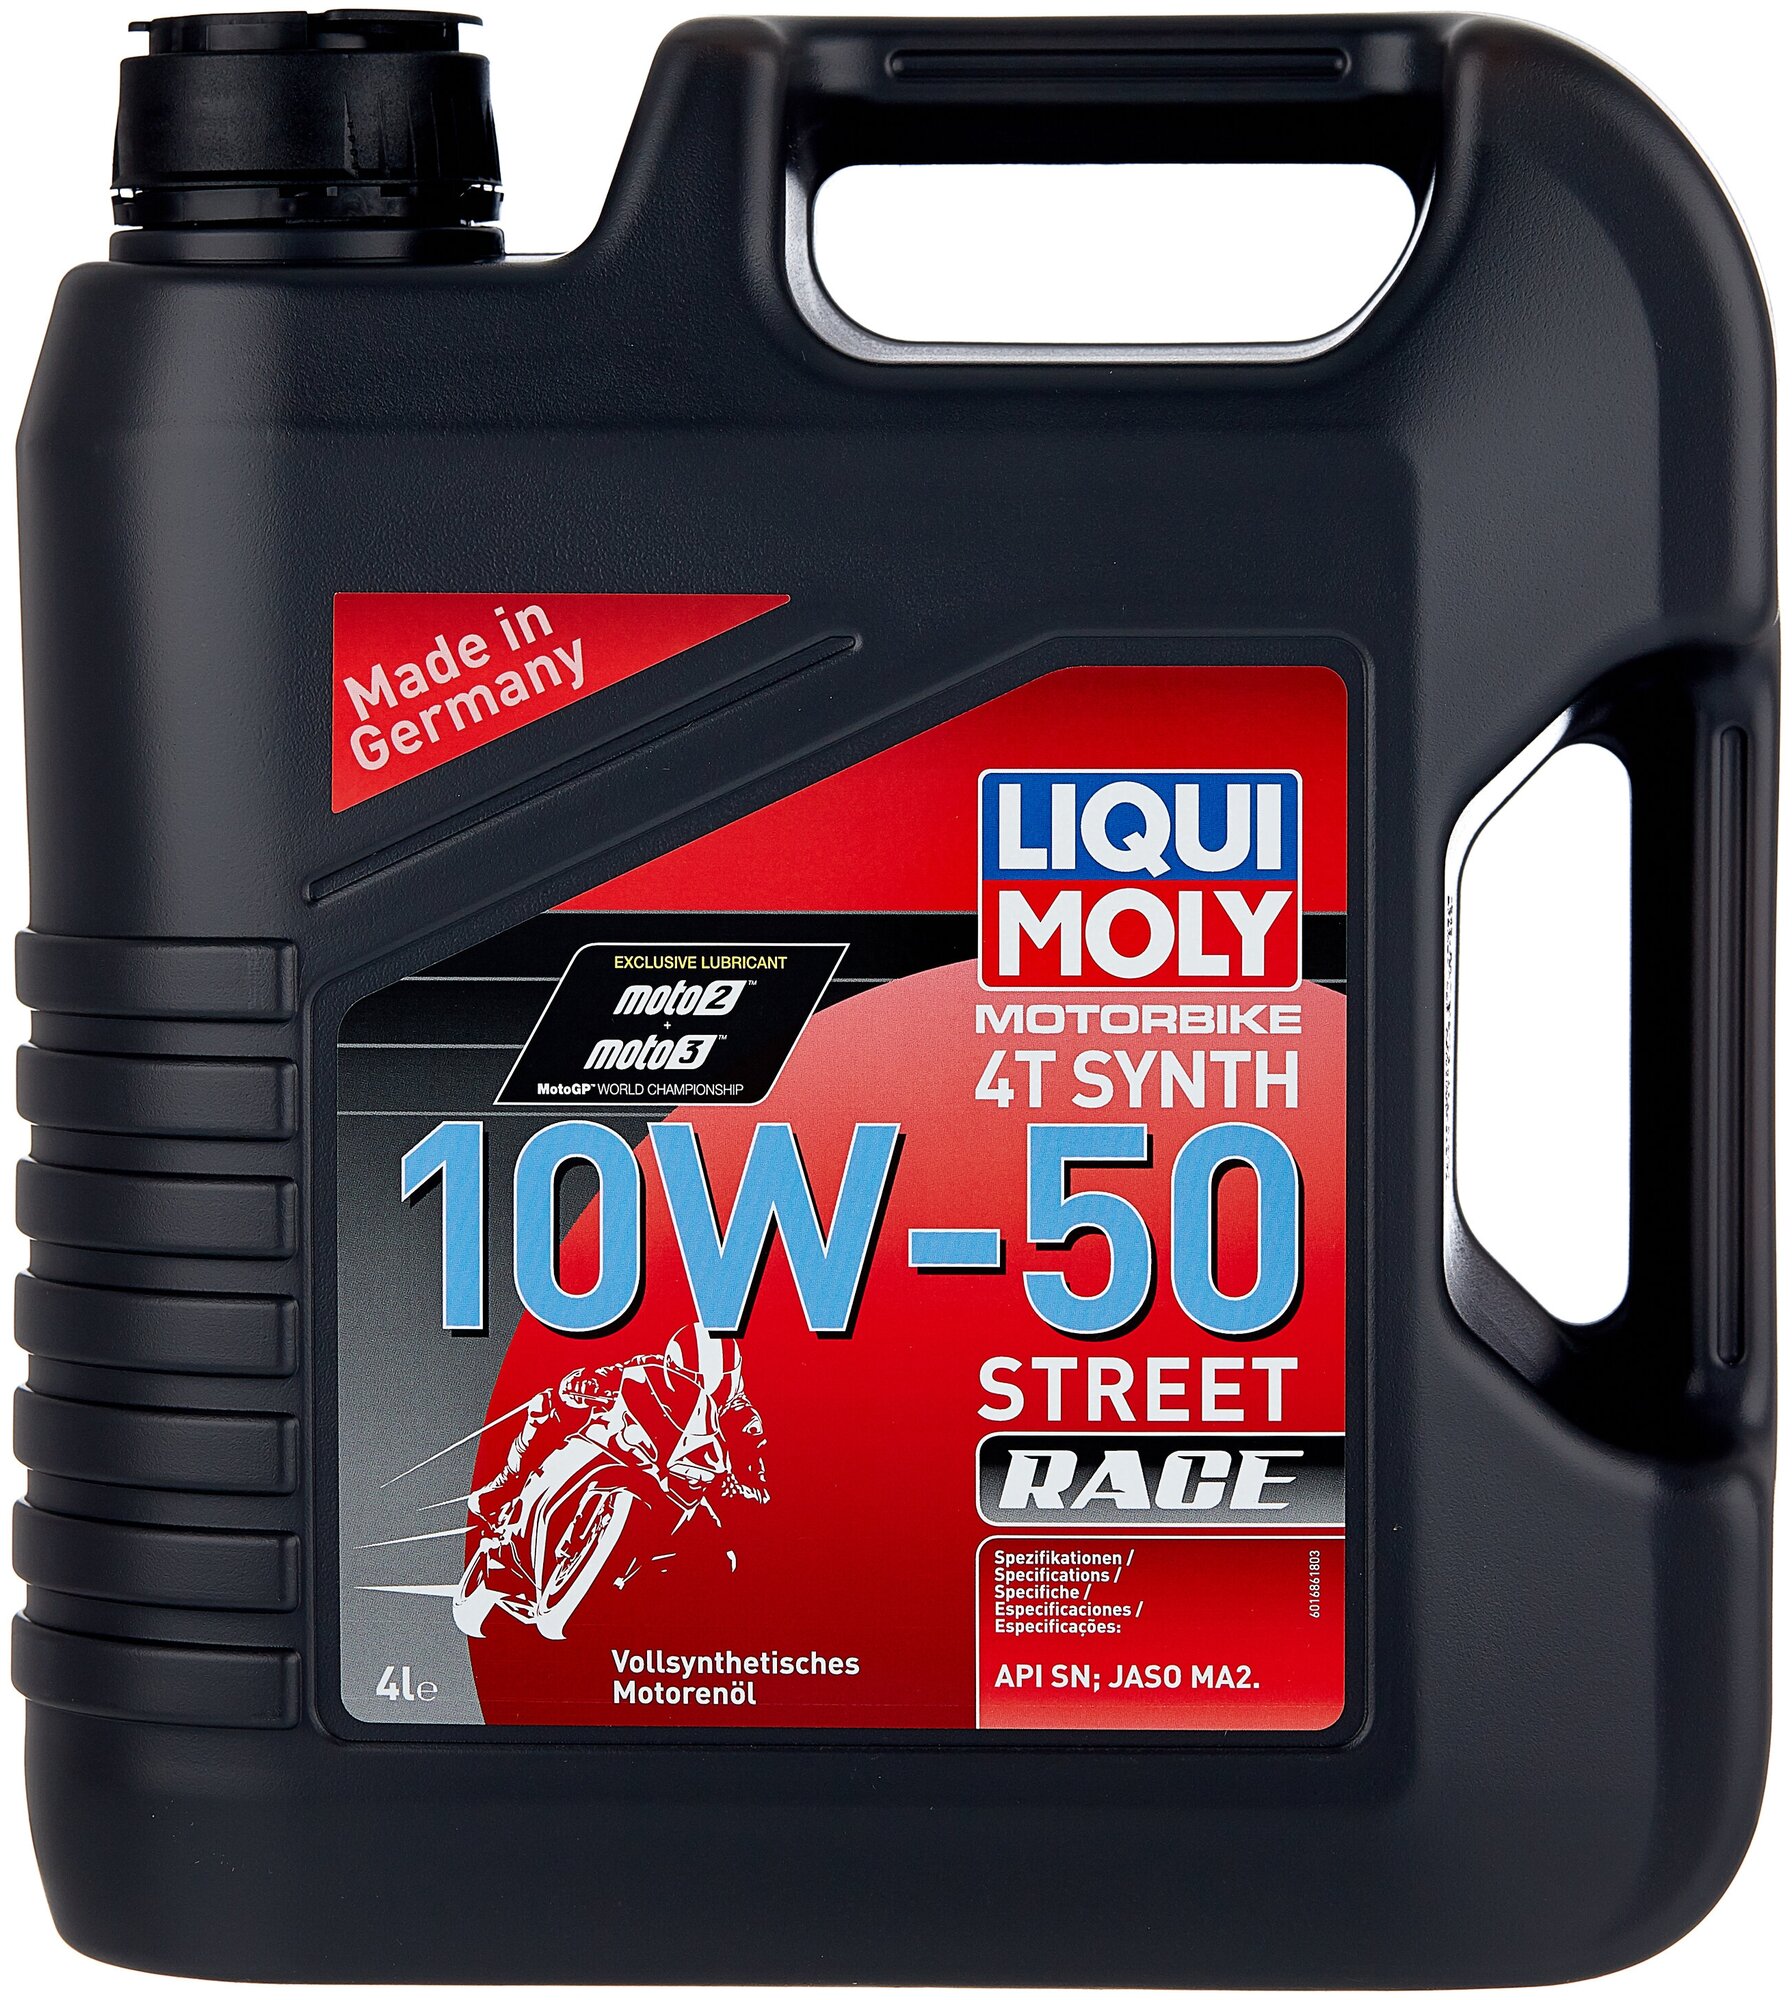 Масло для мотоциклов Liqui Moly 4Т Synth Street Race 10W50, синтетика, 4 литра 7508